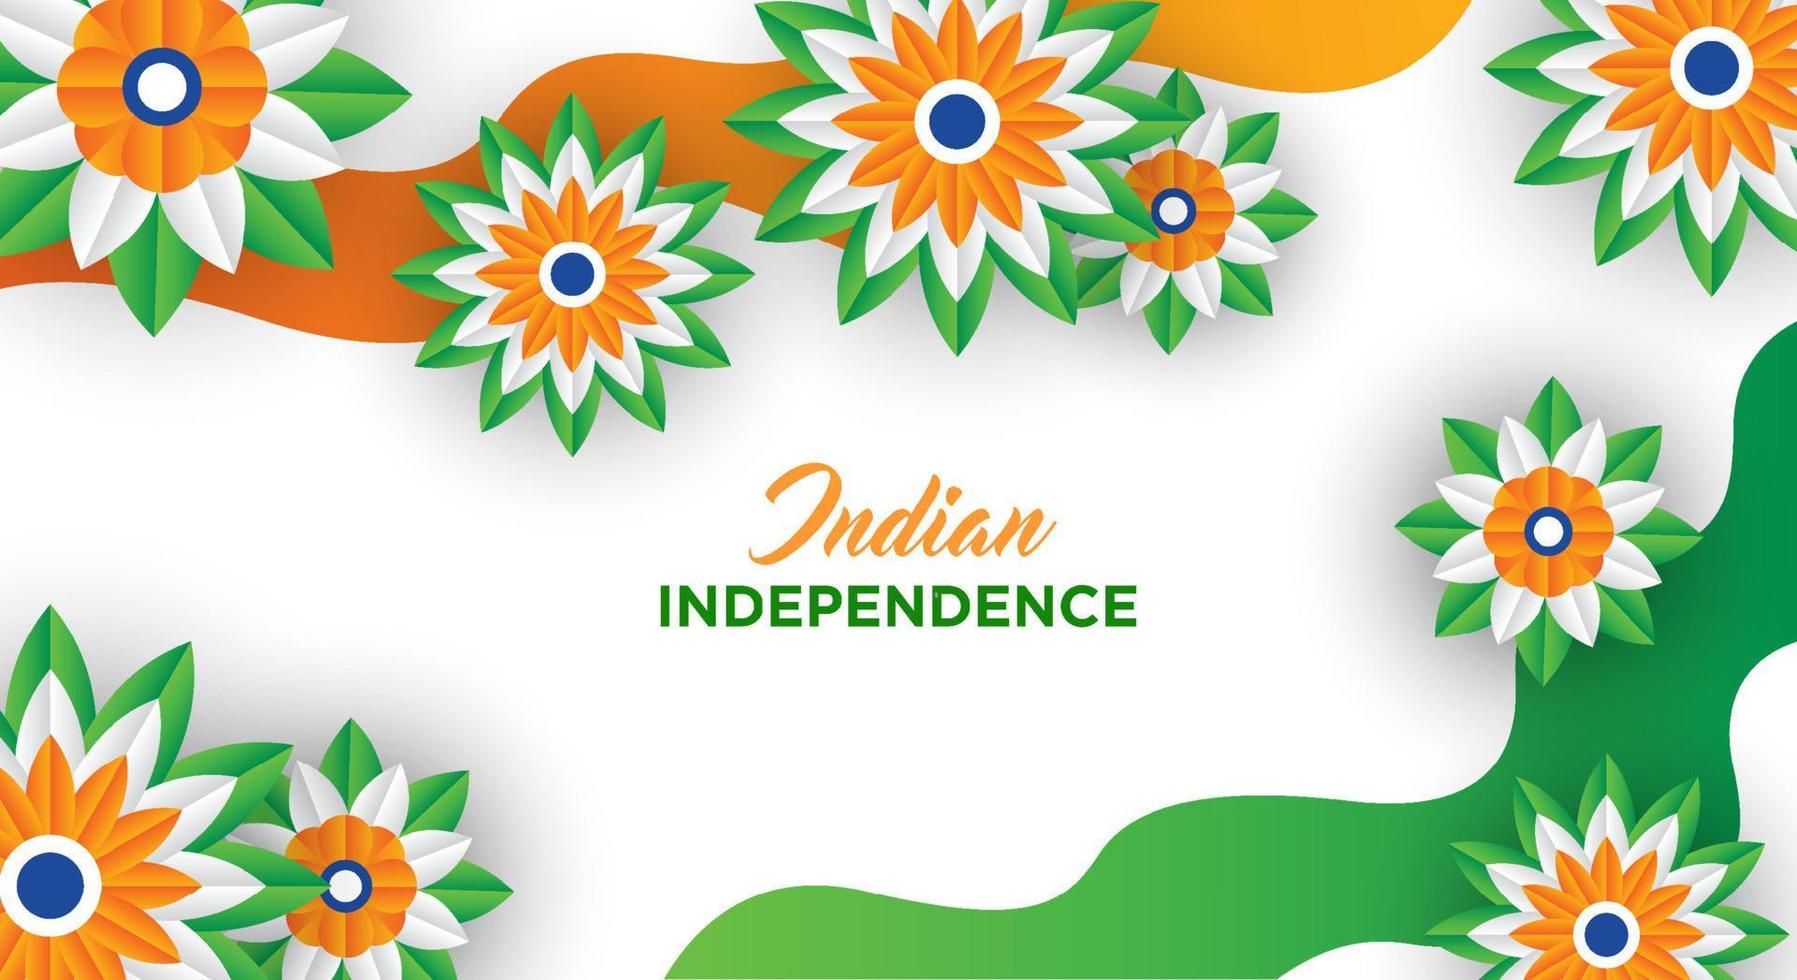 indiase onafhankelijkheidsdag vakantie ontwerp. 3D-wielen, bloemen met bladeren in traditionele driekleur van Indiase vlag. papier gesneden stijl. vector